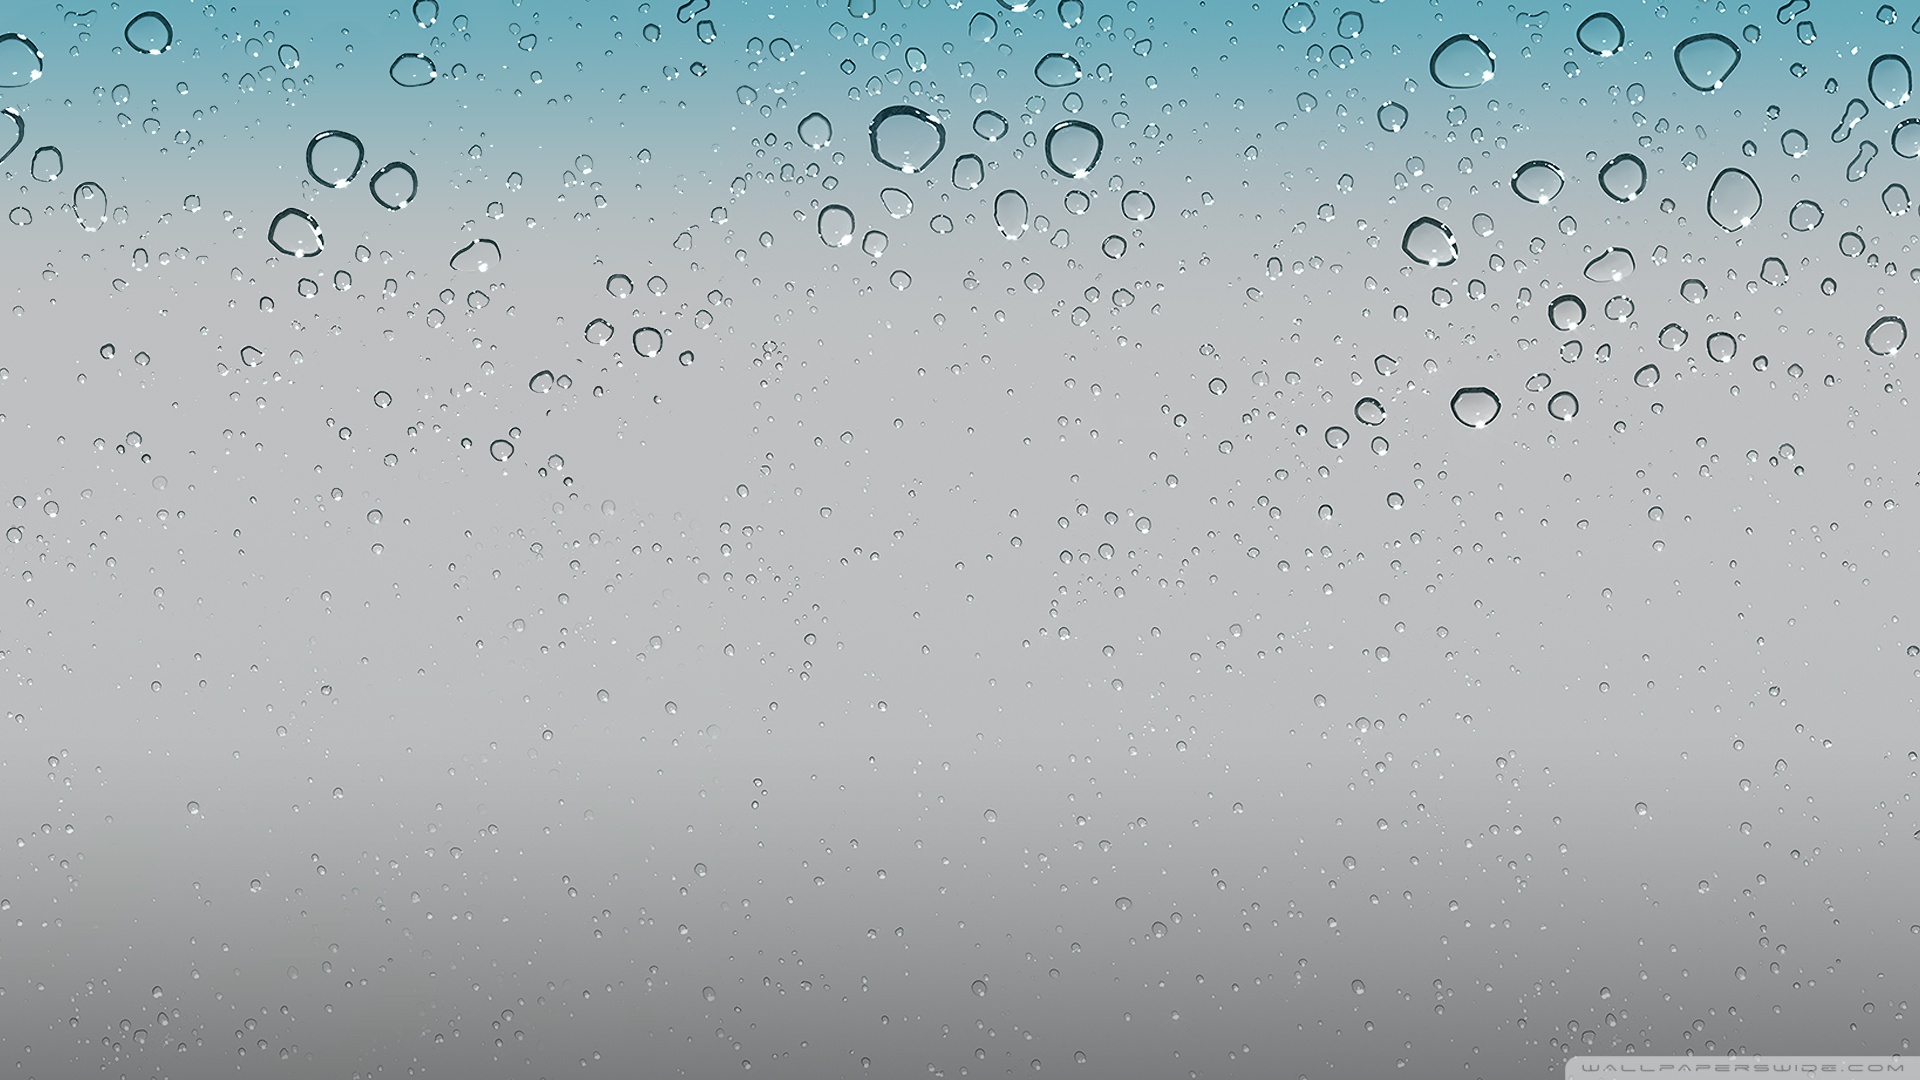 49+] iOS 8 Water Wallpaper - WallpaperSafari